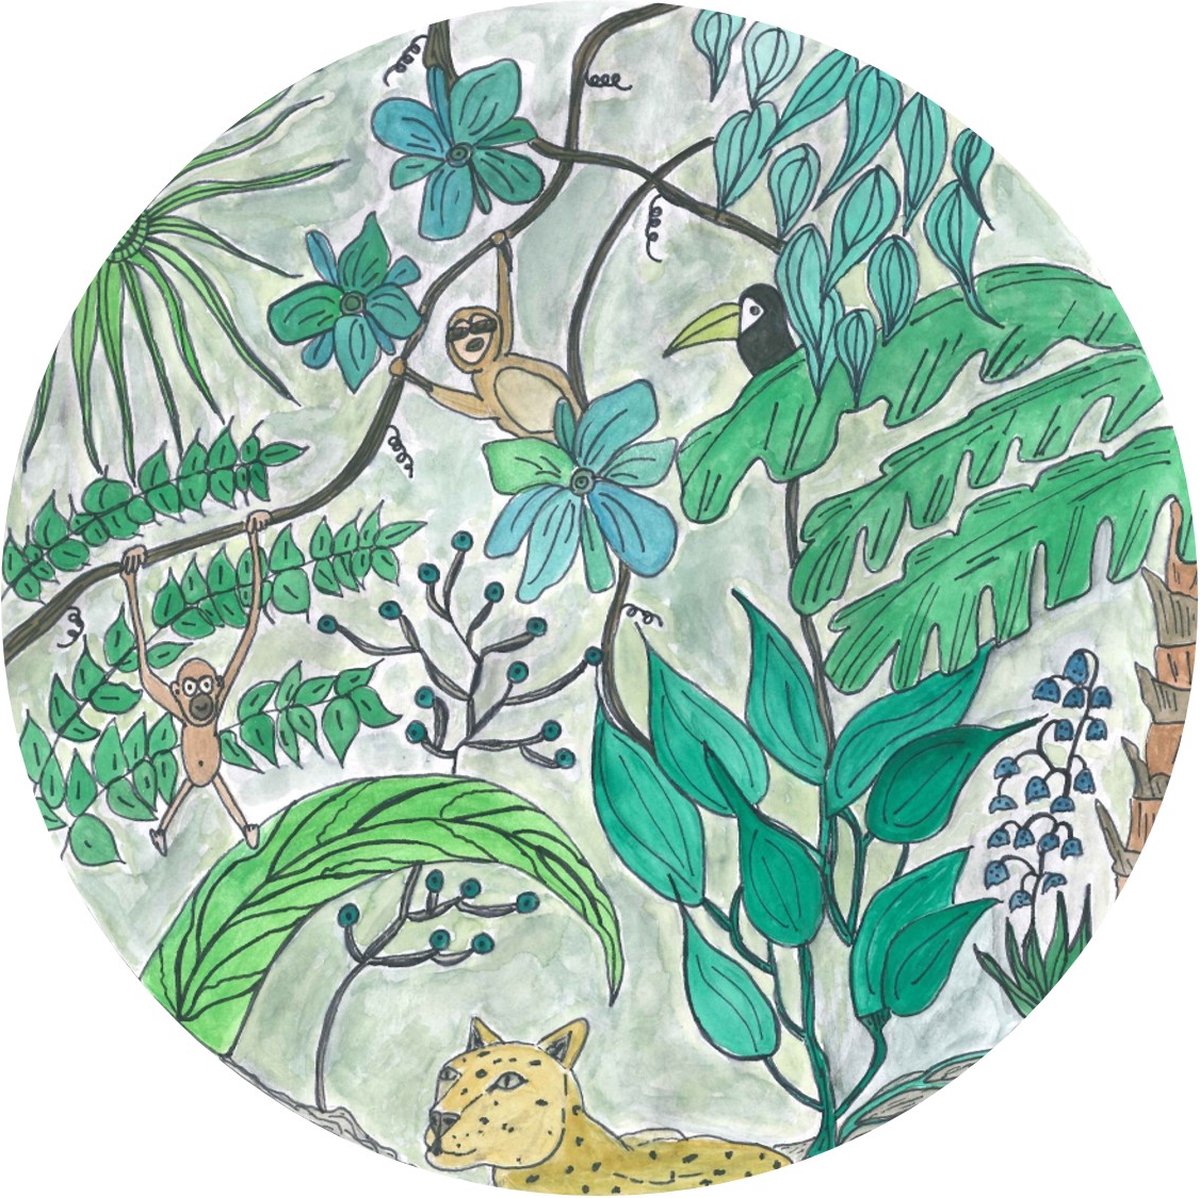 Pure Prints - Behangcirkel Groene jungle - Unieke handgetekende/geschilderde print - Ø145 cm